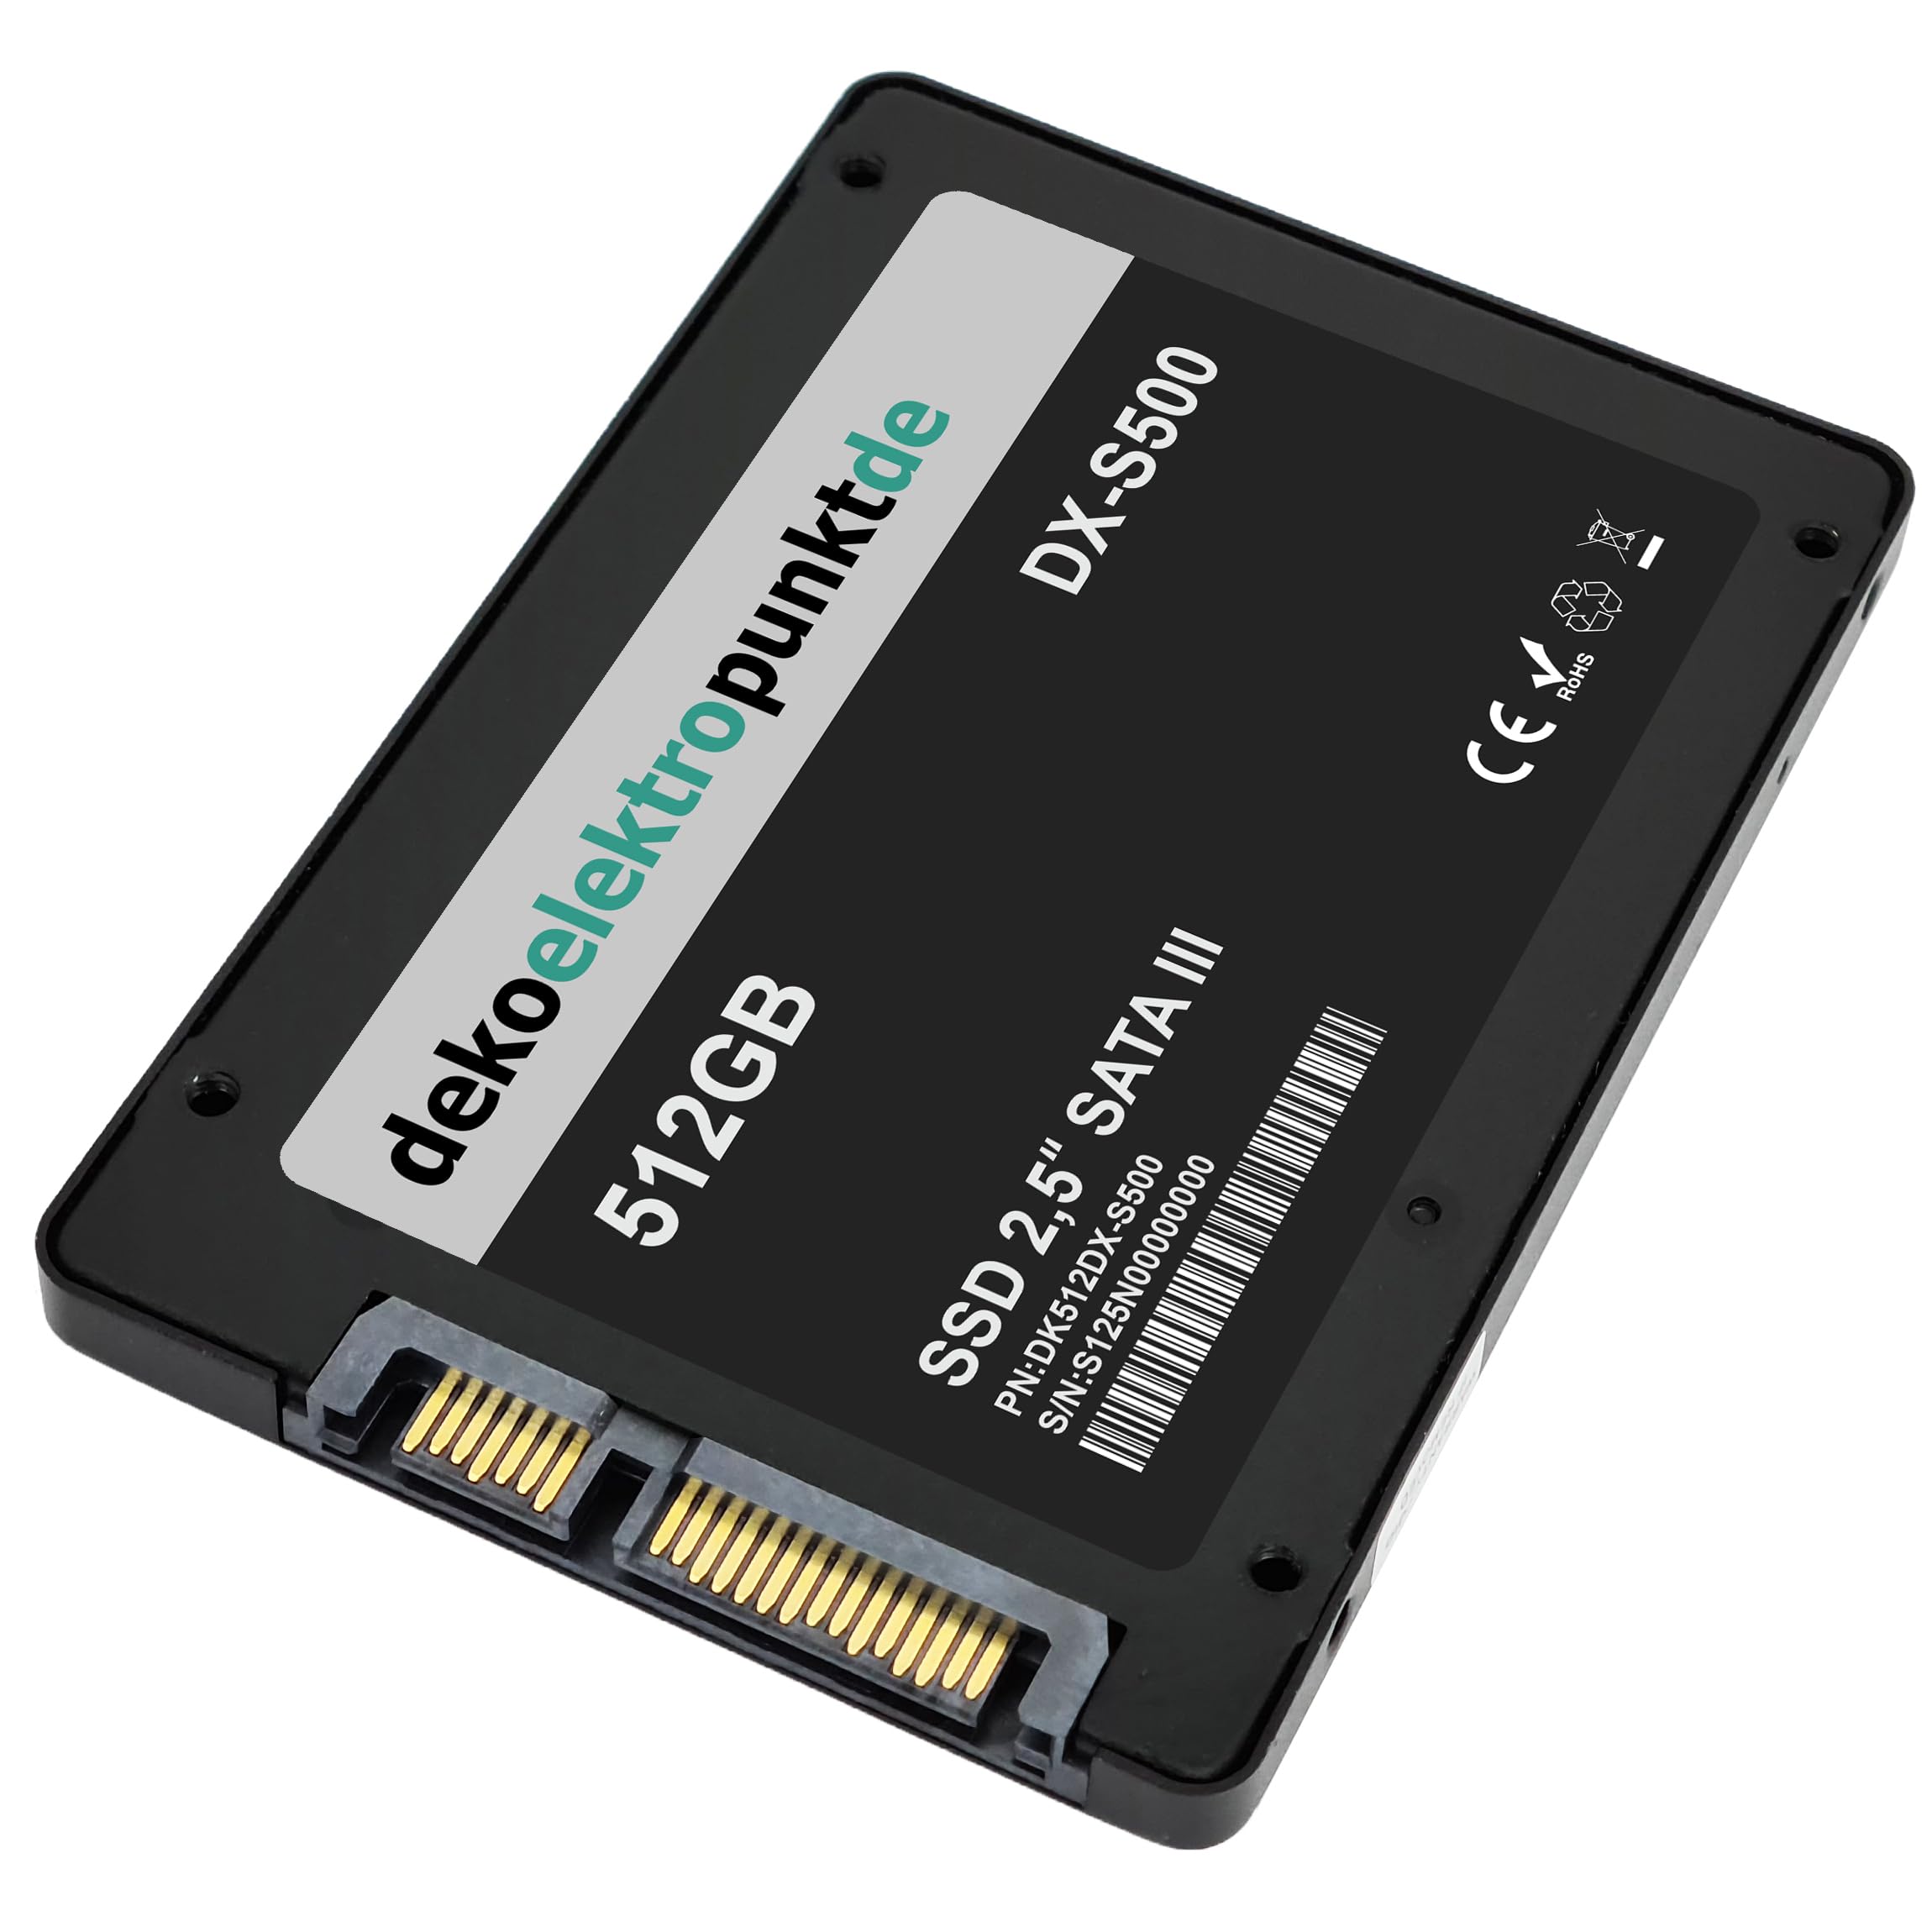 dekoelektropunktde 512GB SSD Festplatte passend für HP Presario V6403, Alternatives Ersatzteil, SATA3 Solid State Drive